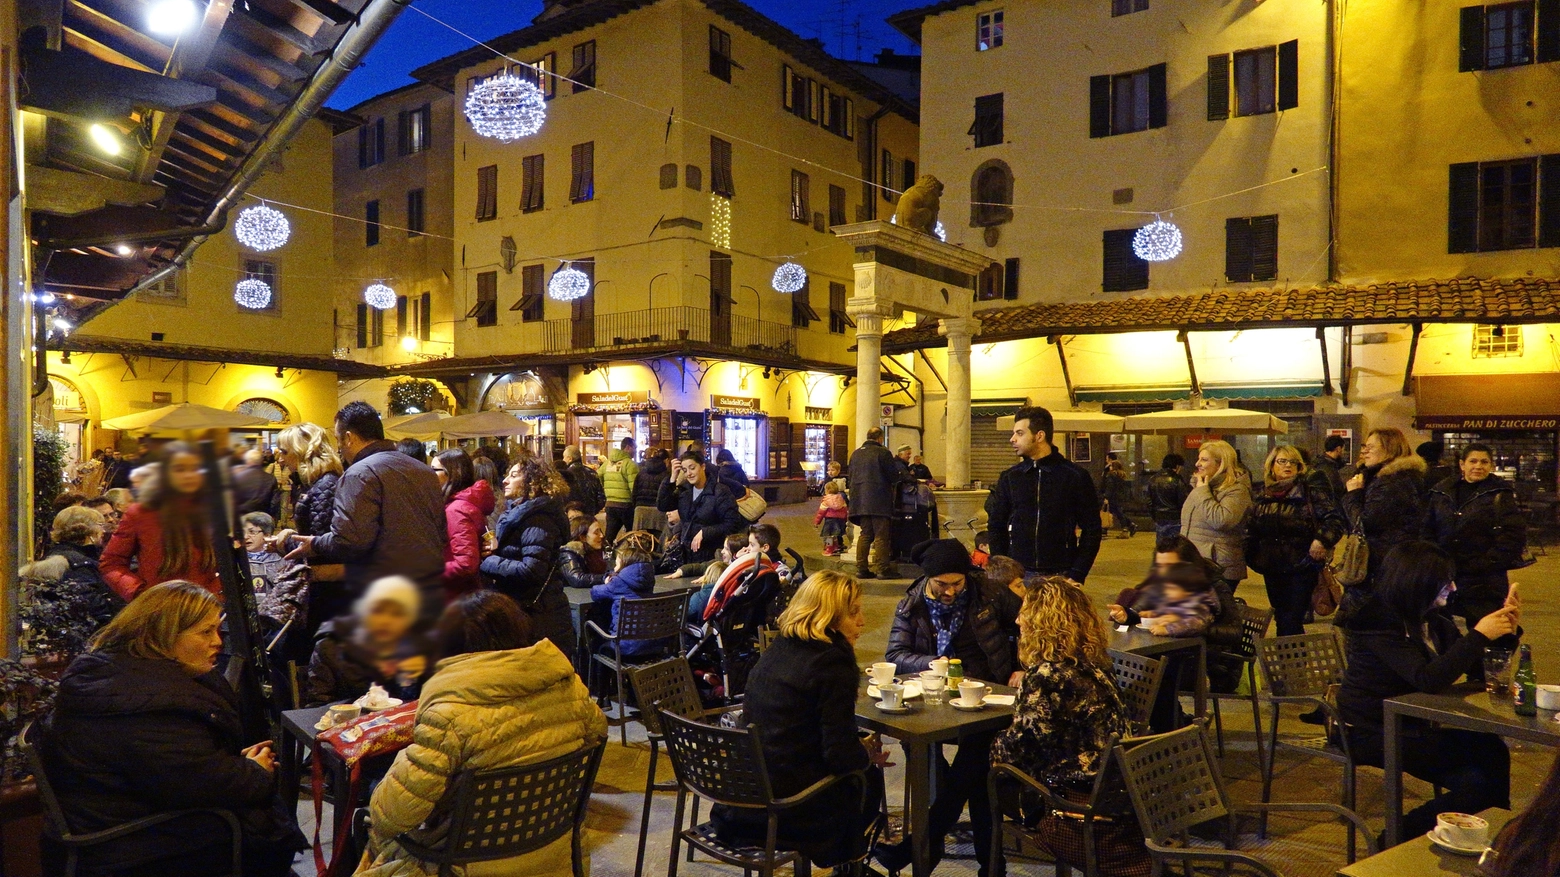 Piazza della Sala affollata in una sera di dicembre (Luca Castellani/FotoCastellani)